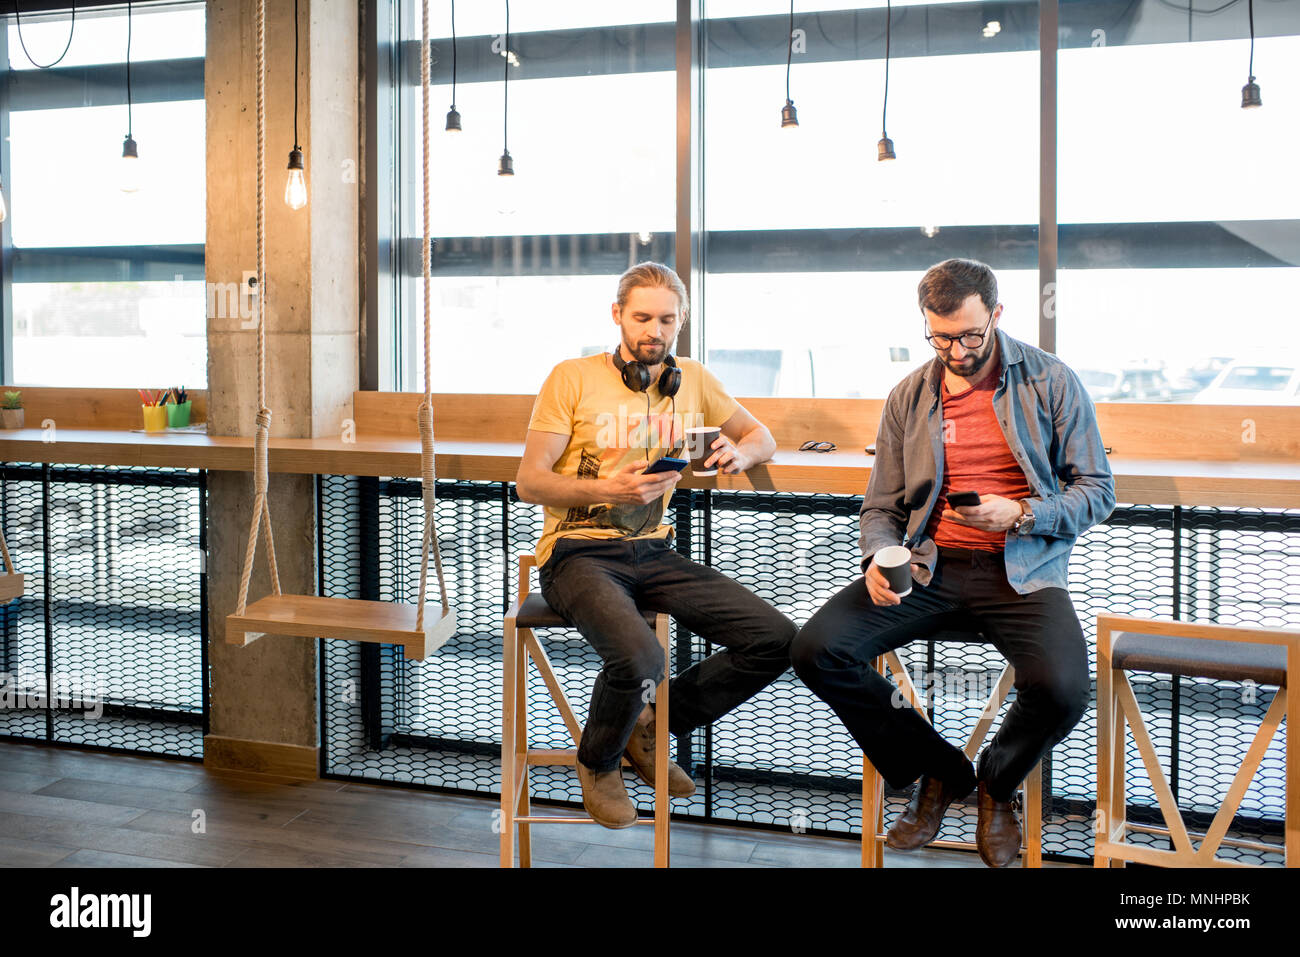 Deux hommes habillés utiliser négligemment assis smartphones près de la fenêtre de l'intérieur moderne cafe Banque D'Images